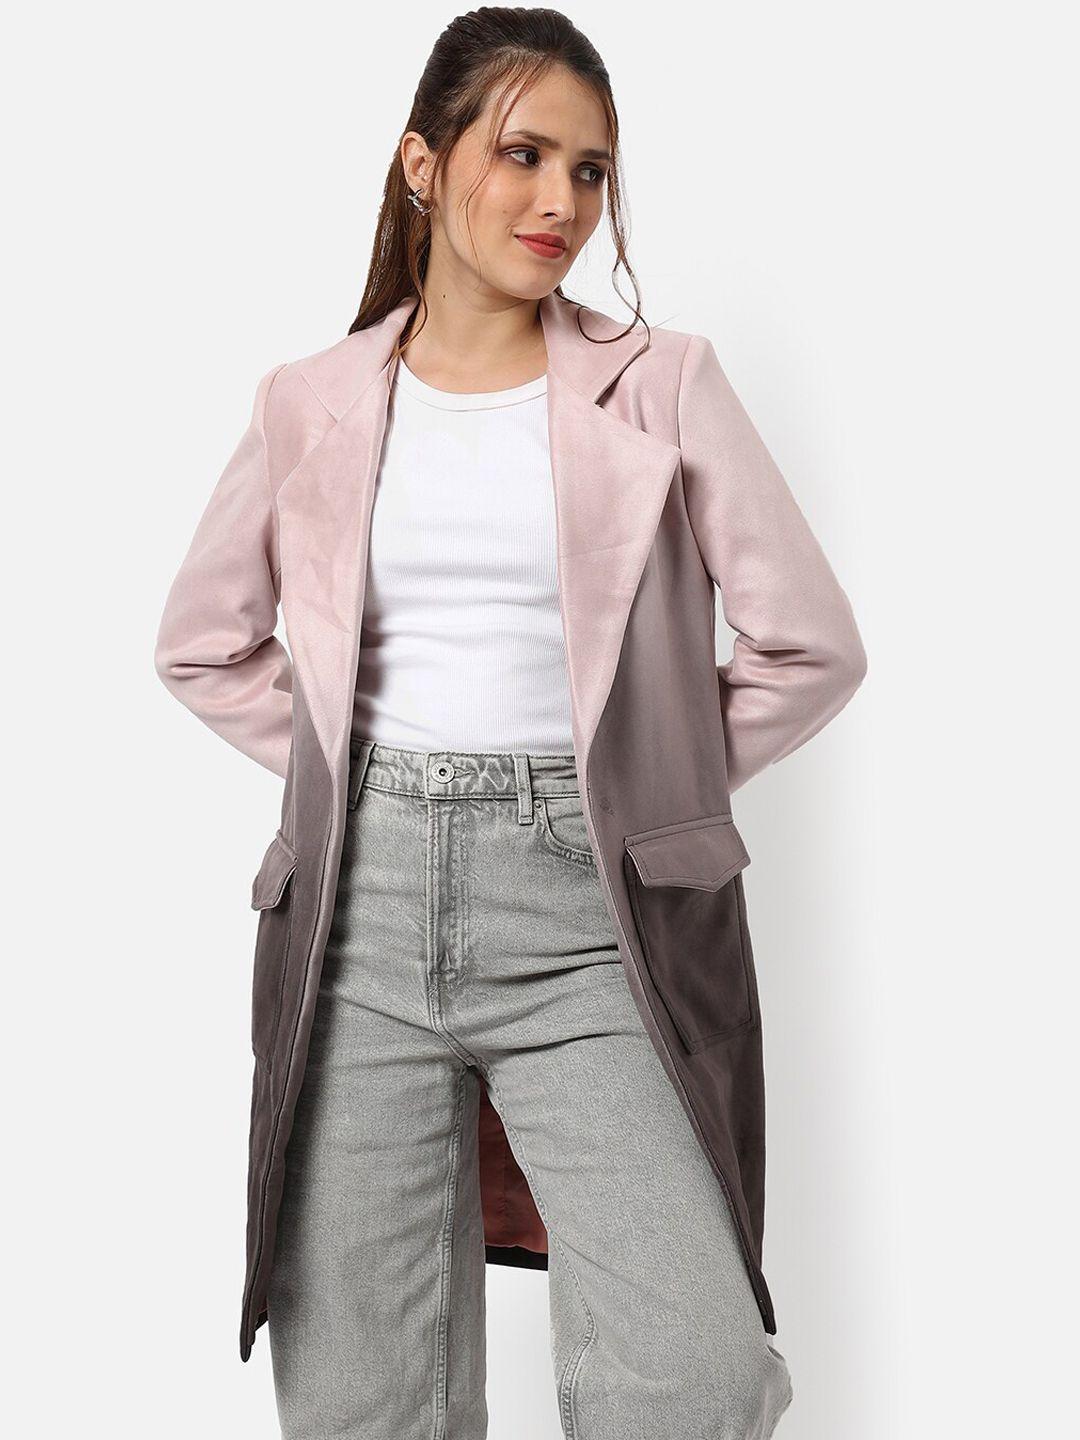 campus sutra women pink & brown self design overcoats